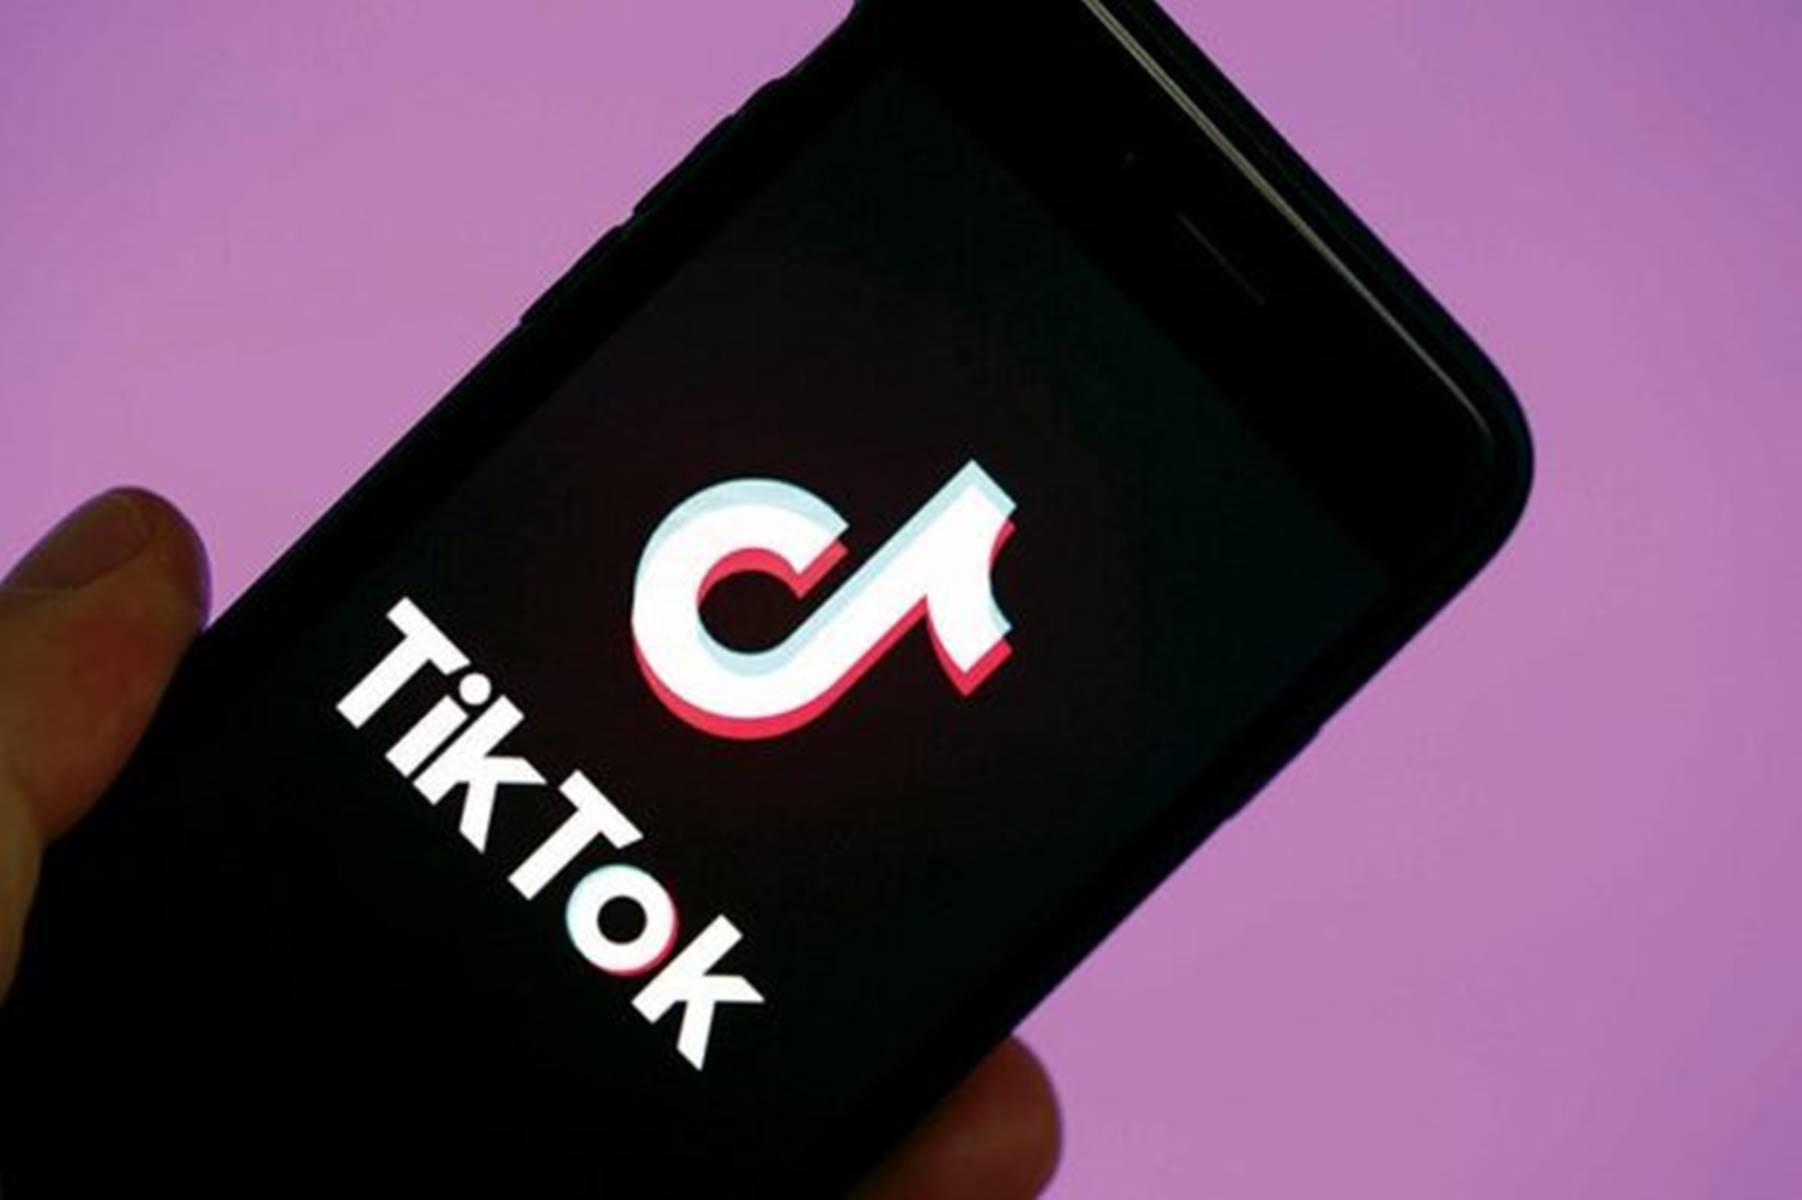 Vídeos curtos, filtros e realidade aumentada: TikTok tenta crescer